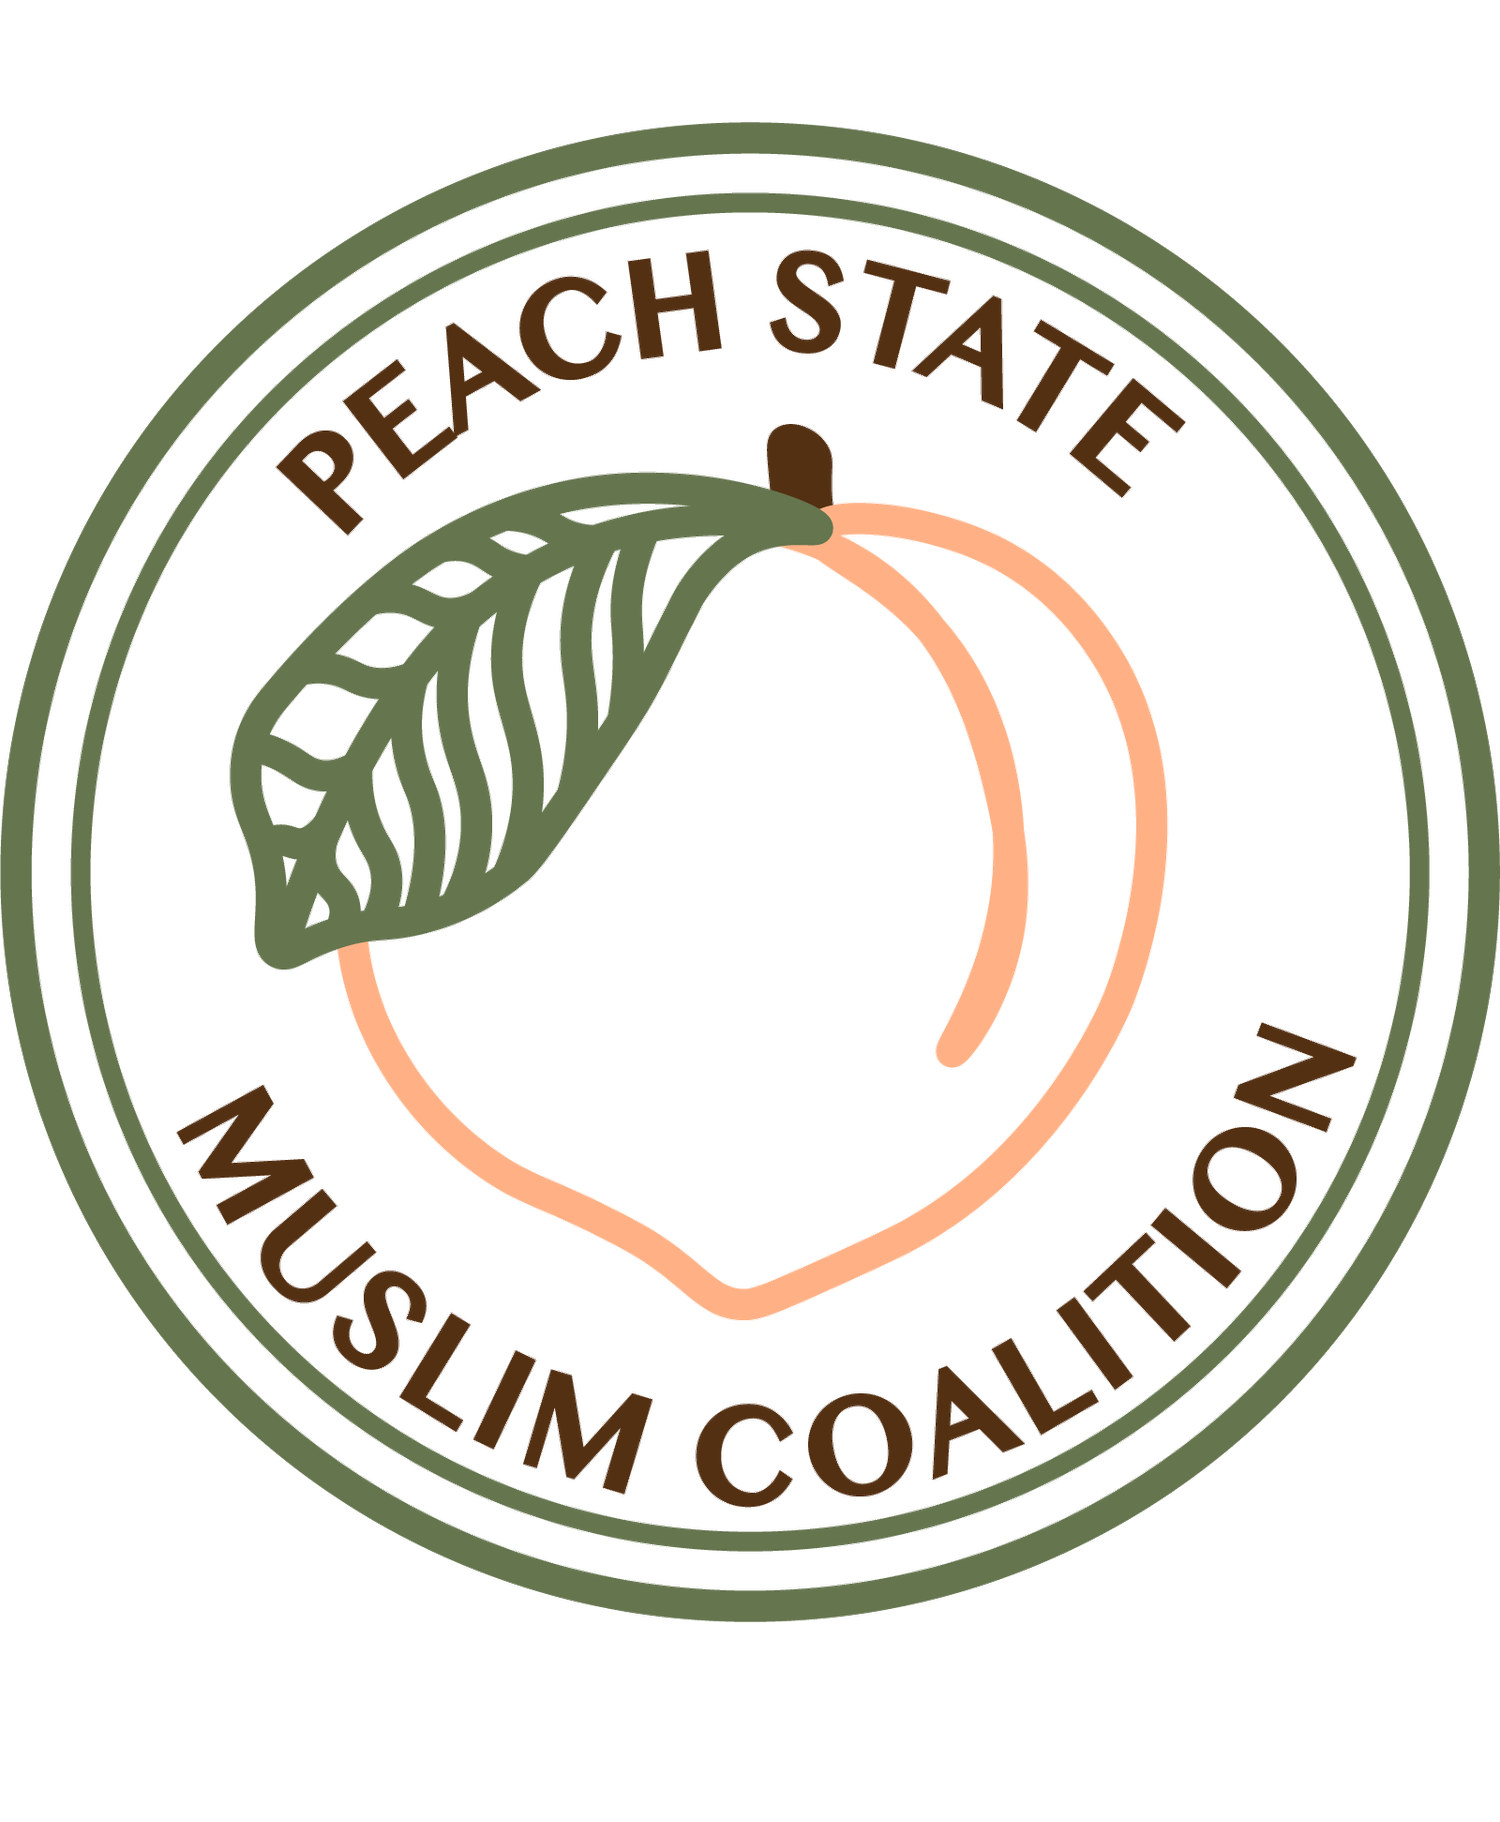 Peach State Muslim Coalition